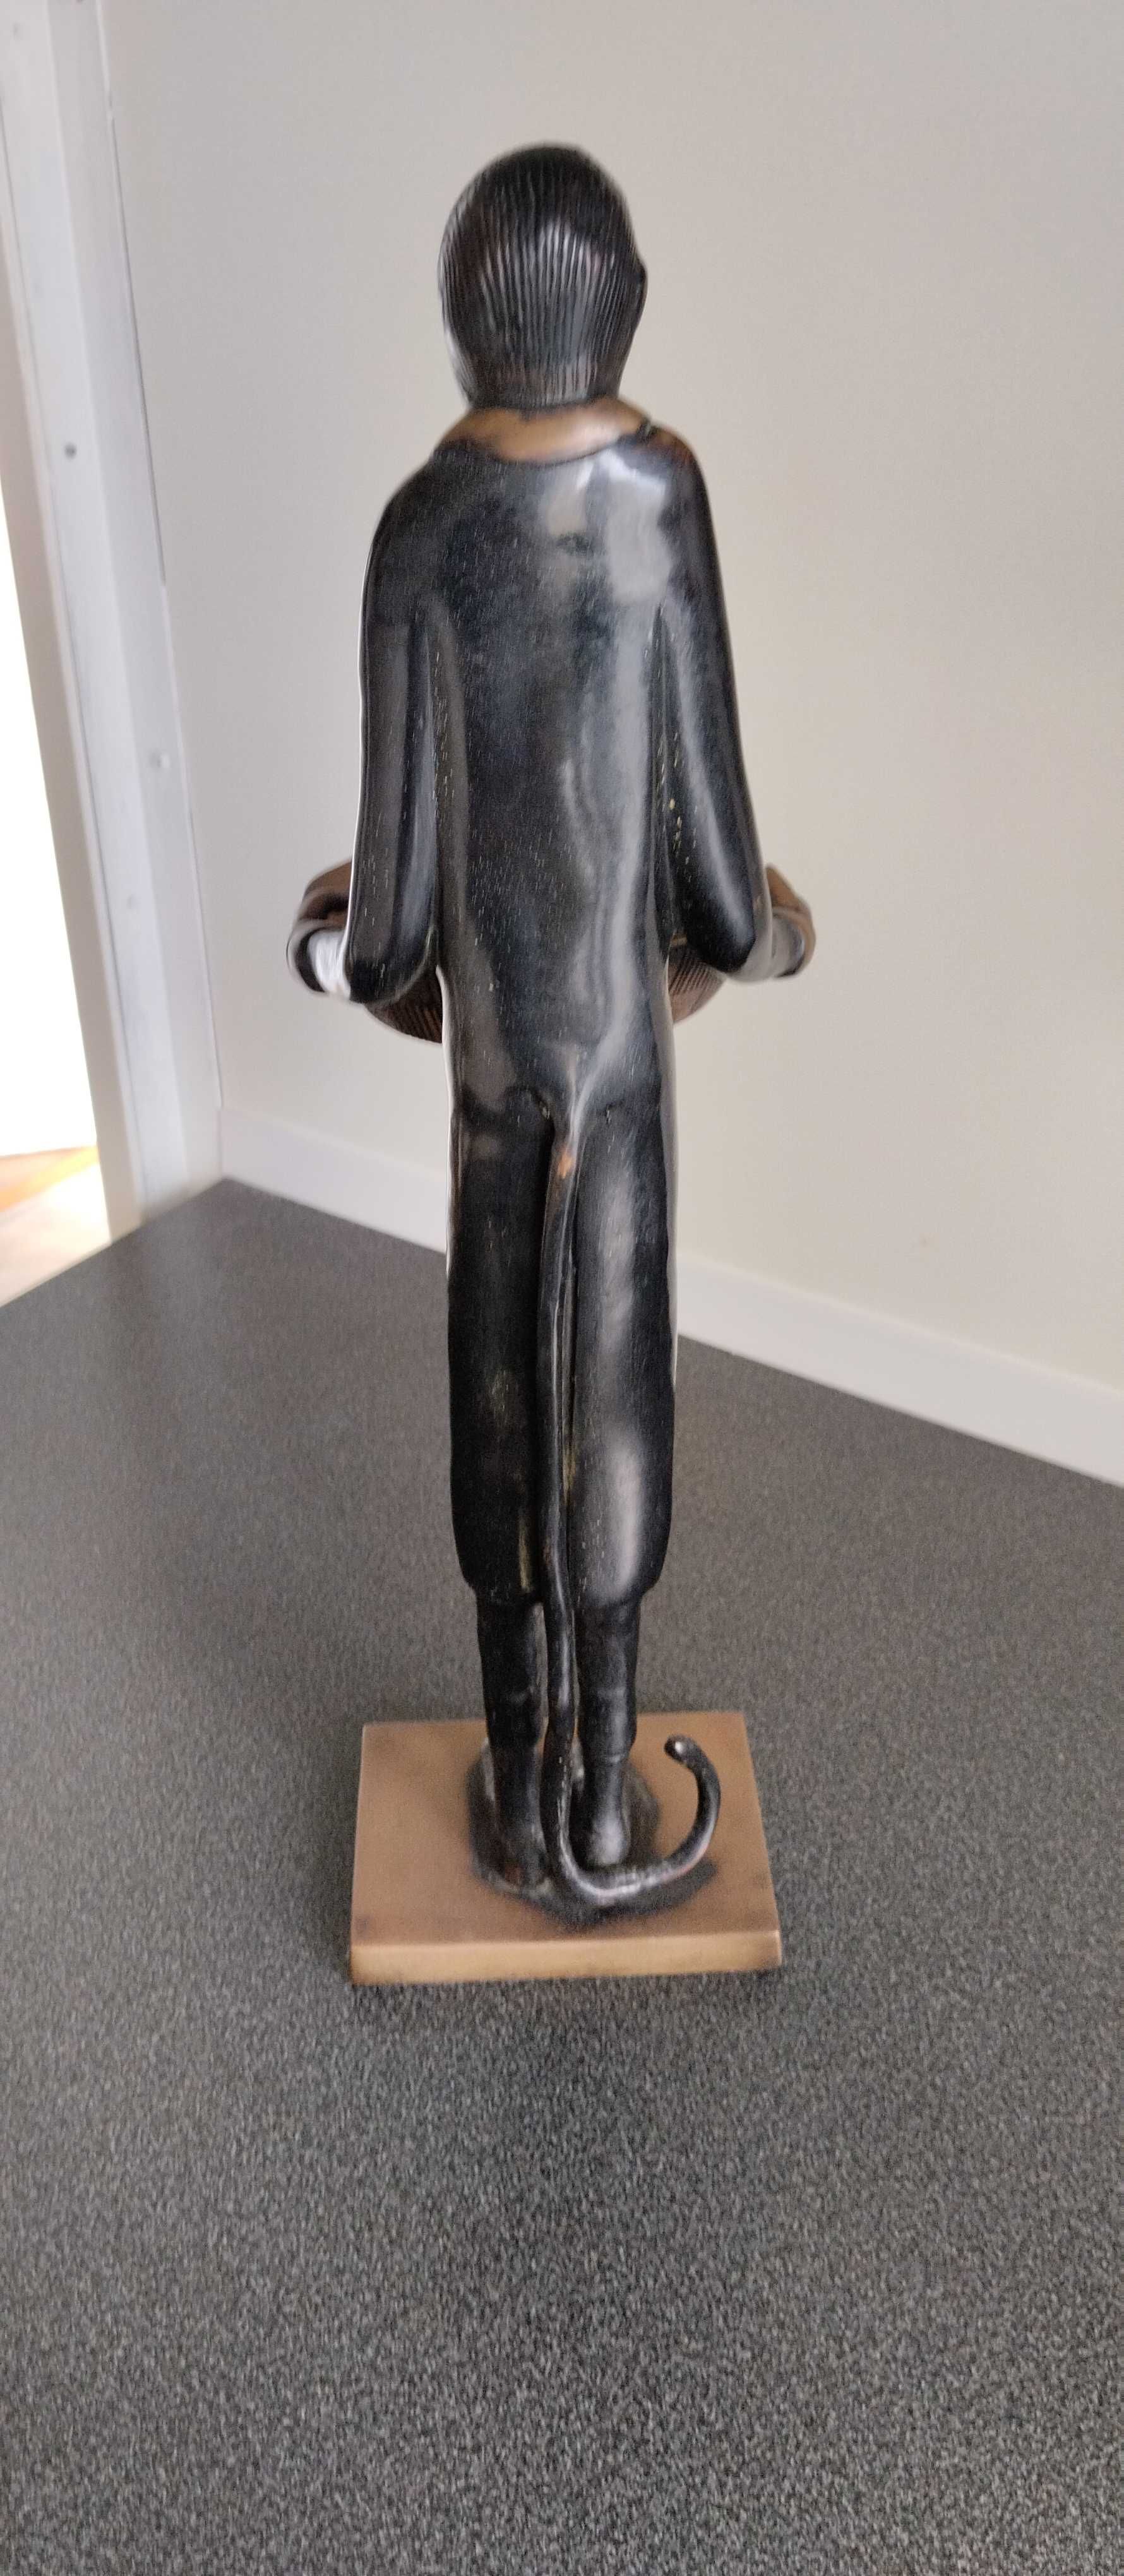 Macaco humano, estatueta bronze.